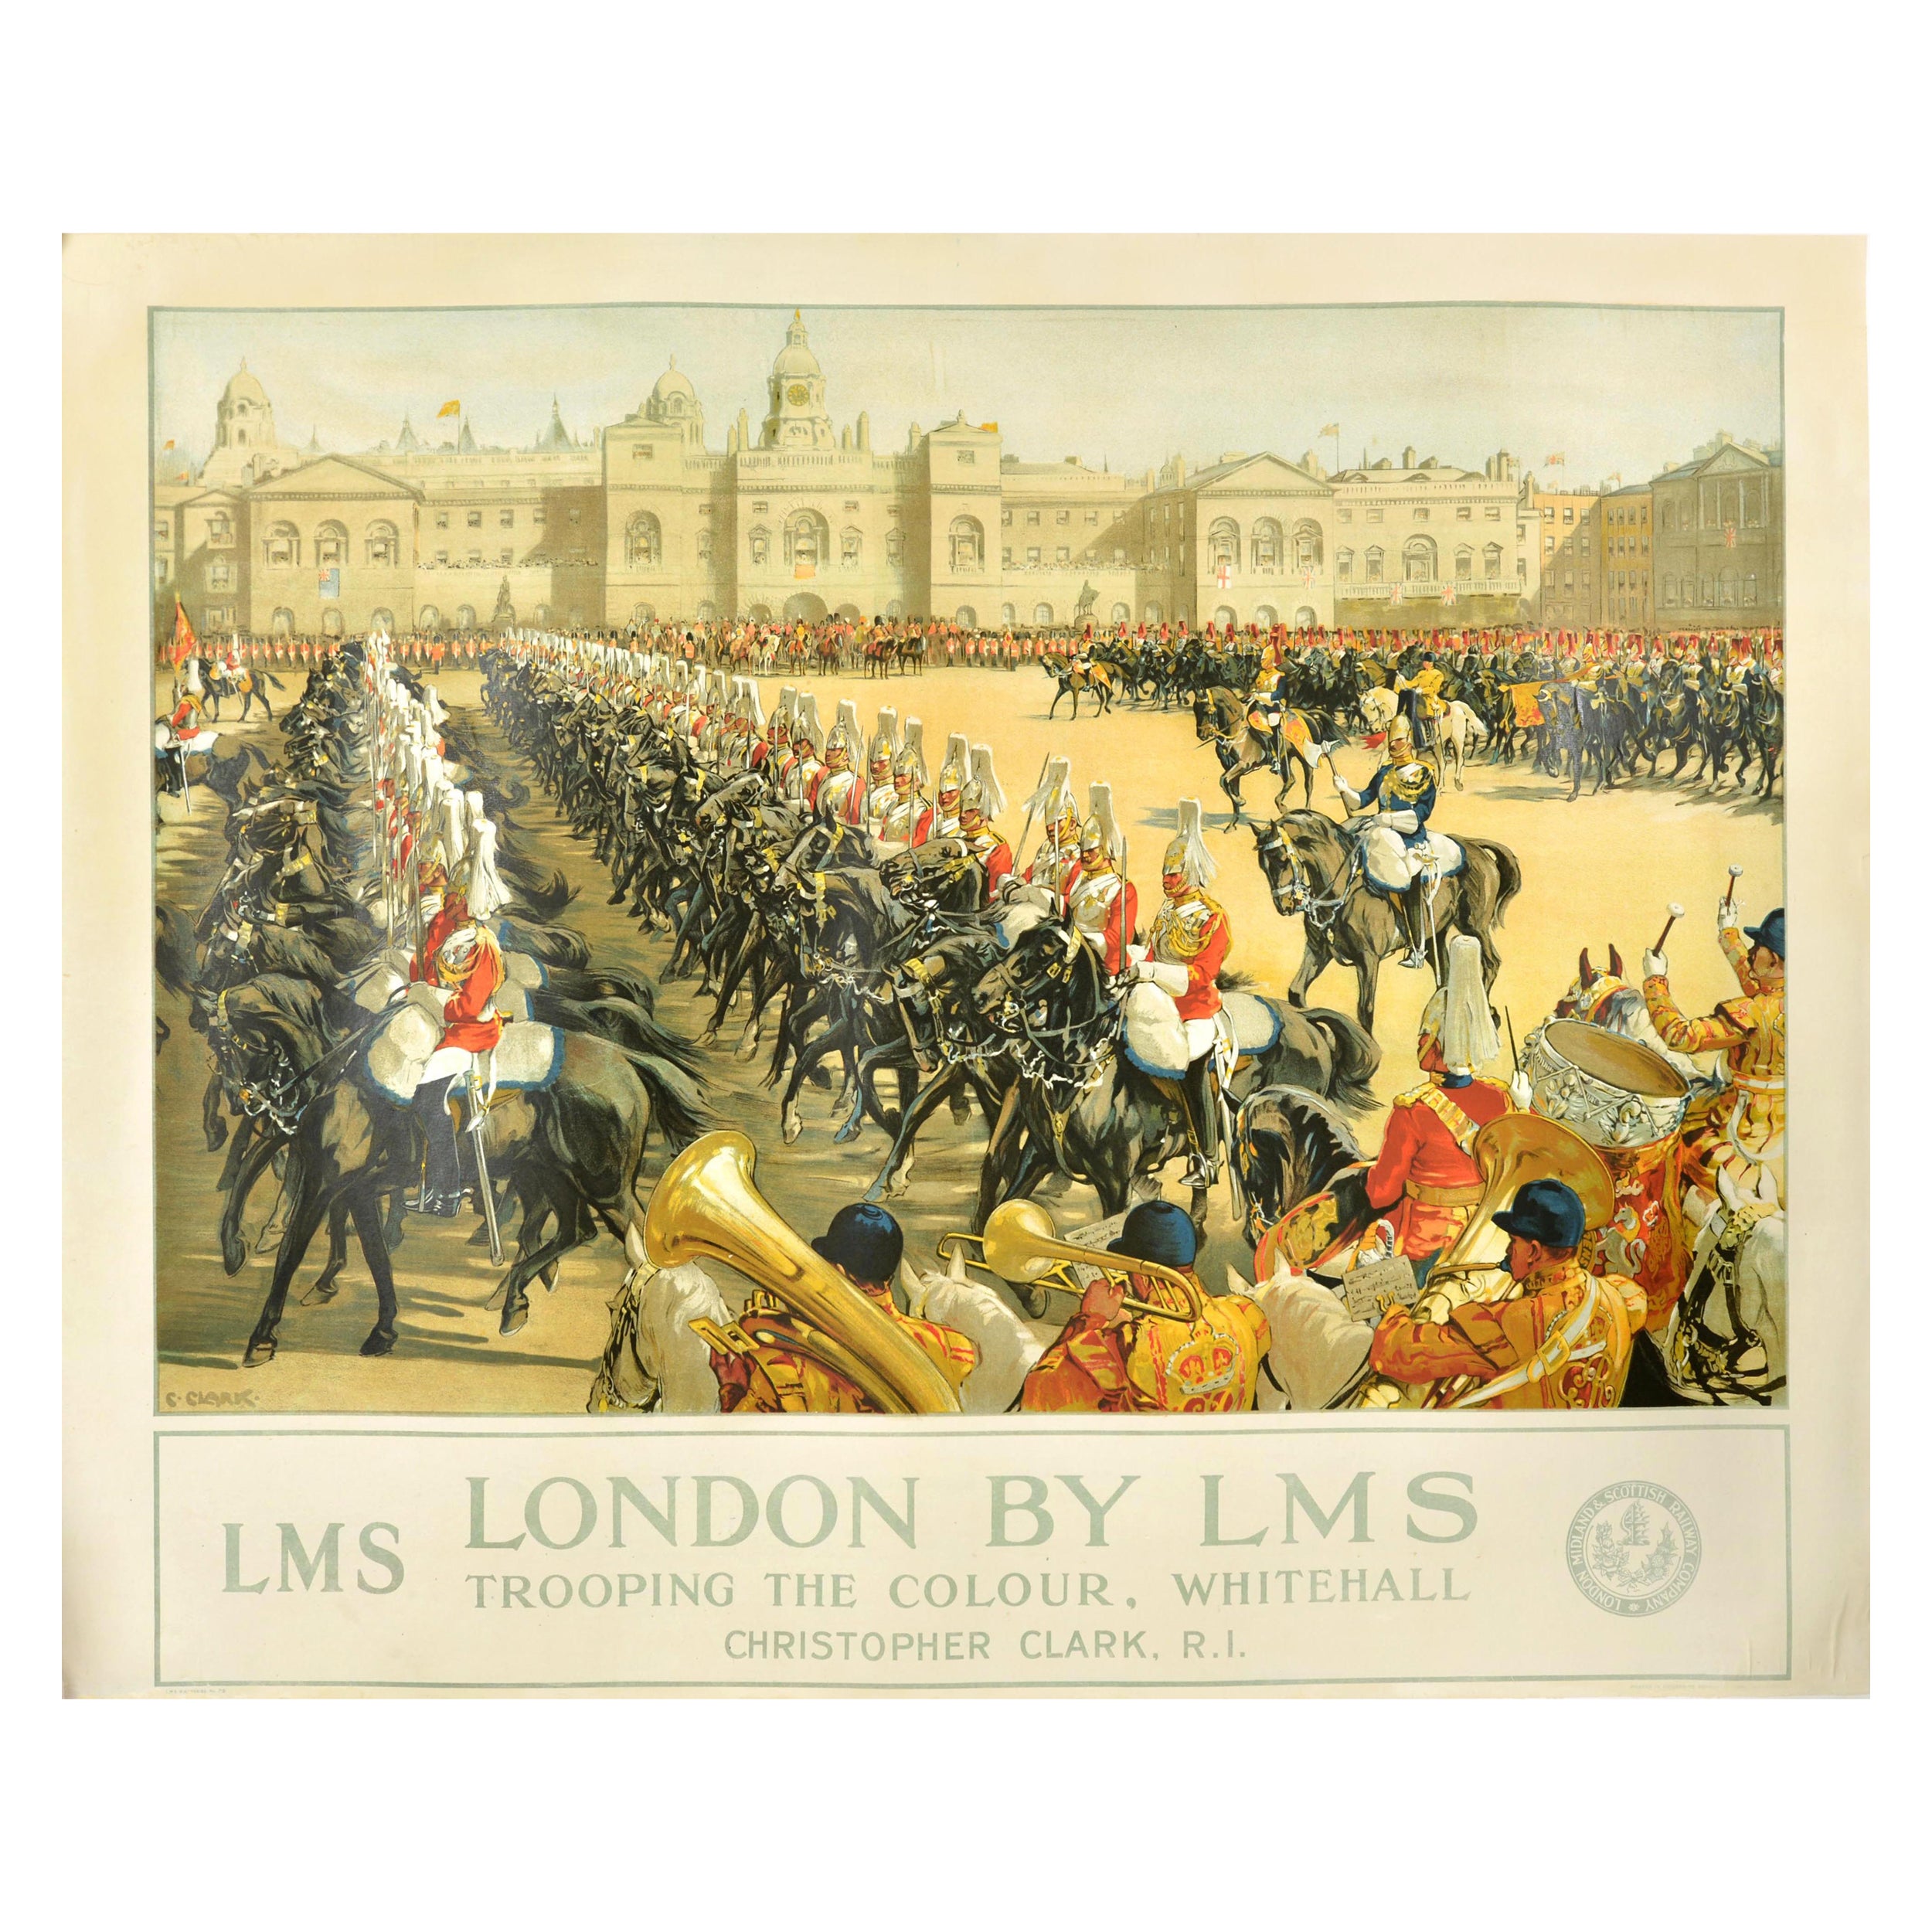 Affiche vintage d'origine de la LMS (London Midland Scottish Railway), Trooping The Colour en vente